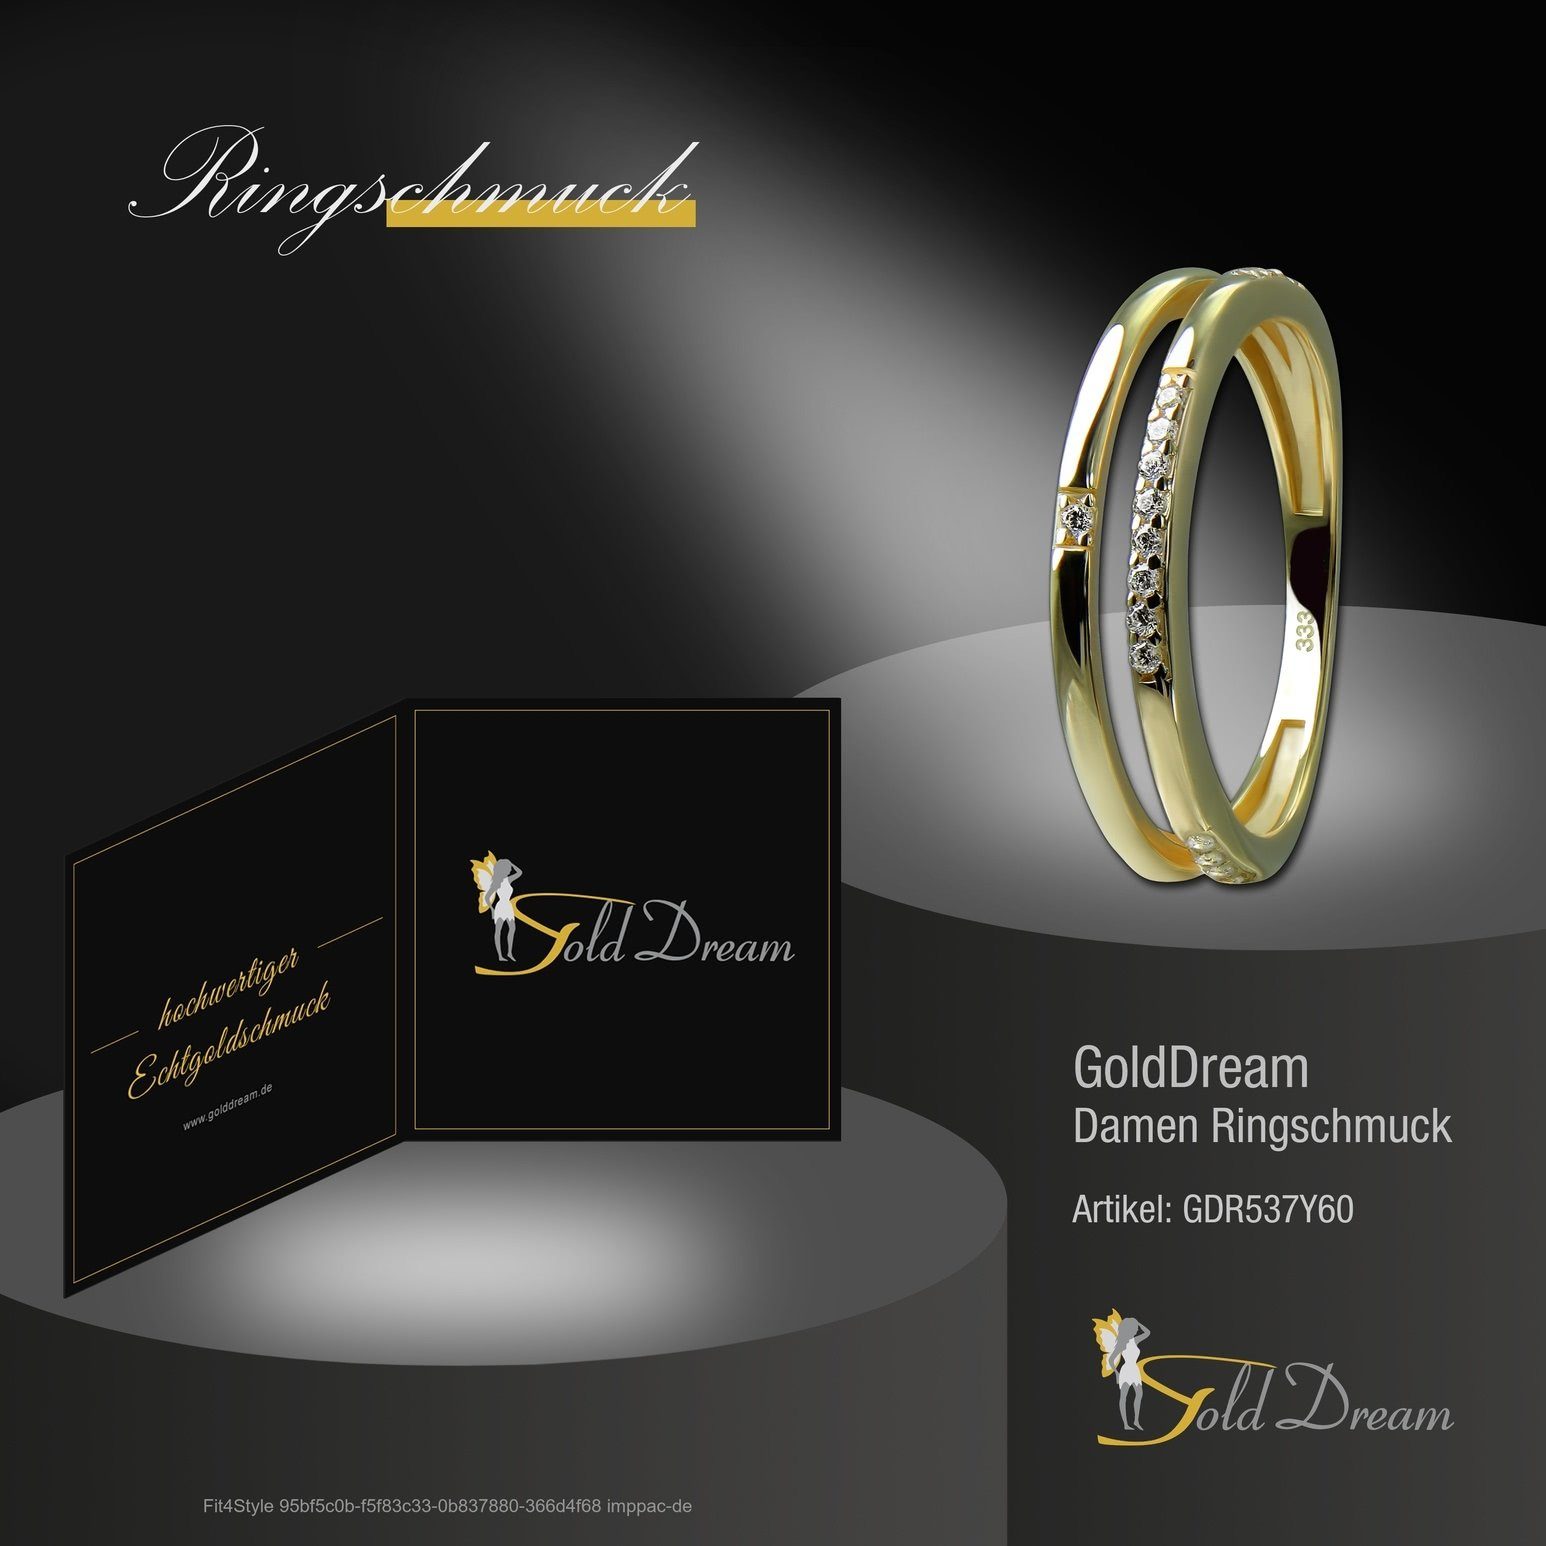 Damen GoldDream weiß (Fingerring), 8 gold, Double Ring Ring Farbe: GoldDream Gr.60 Goldring Gelbgold Double - Gold 333 Karat,